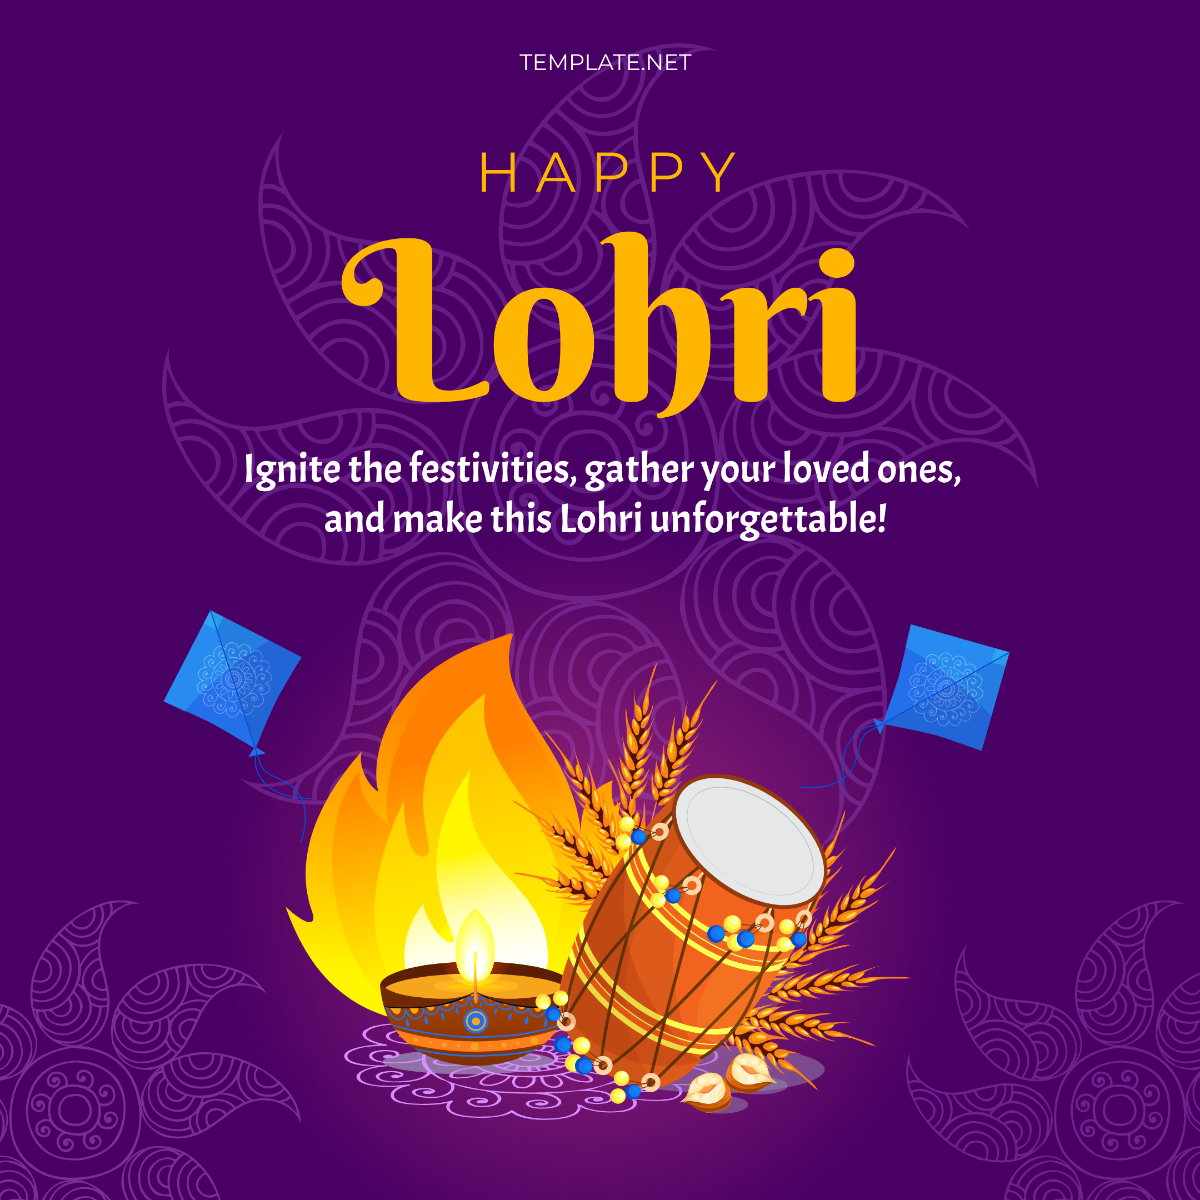 Happy Lohri Instagram Post